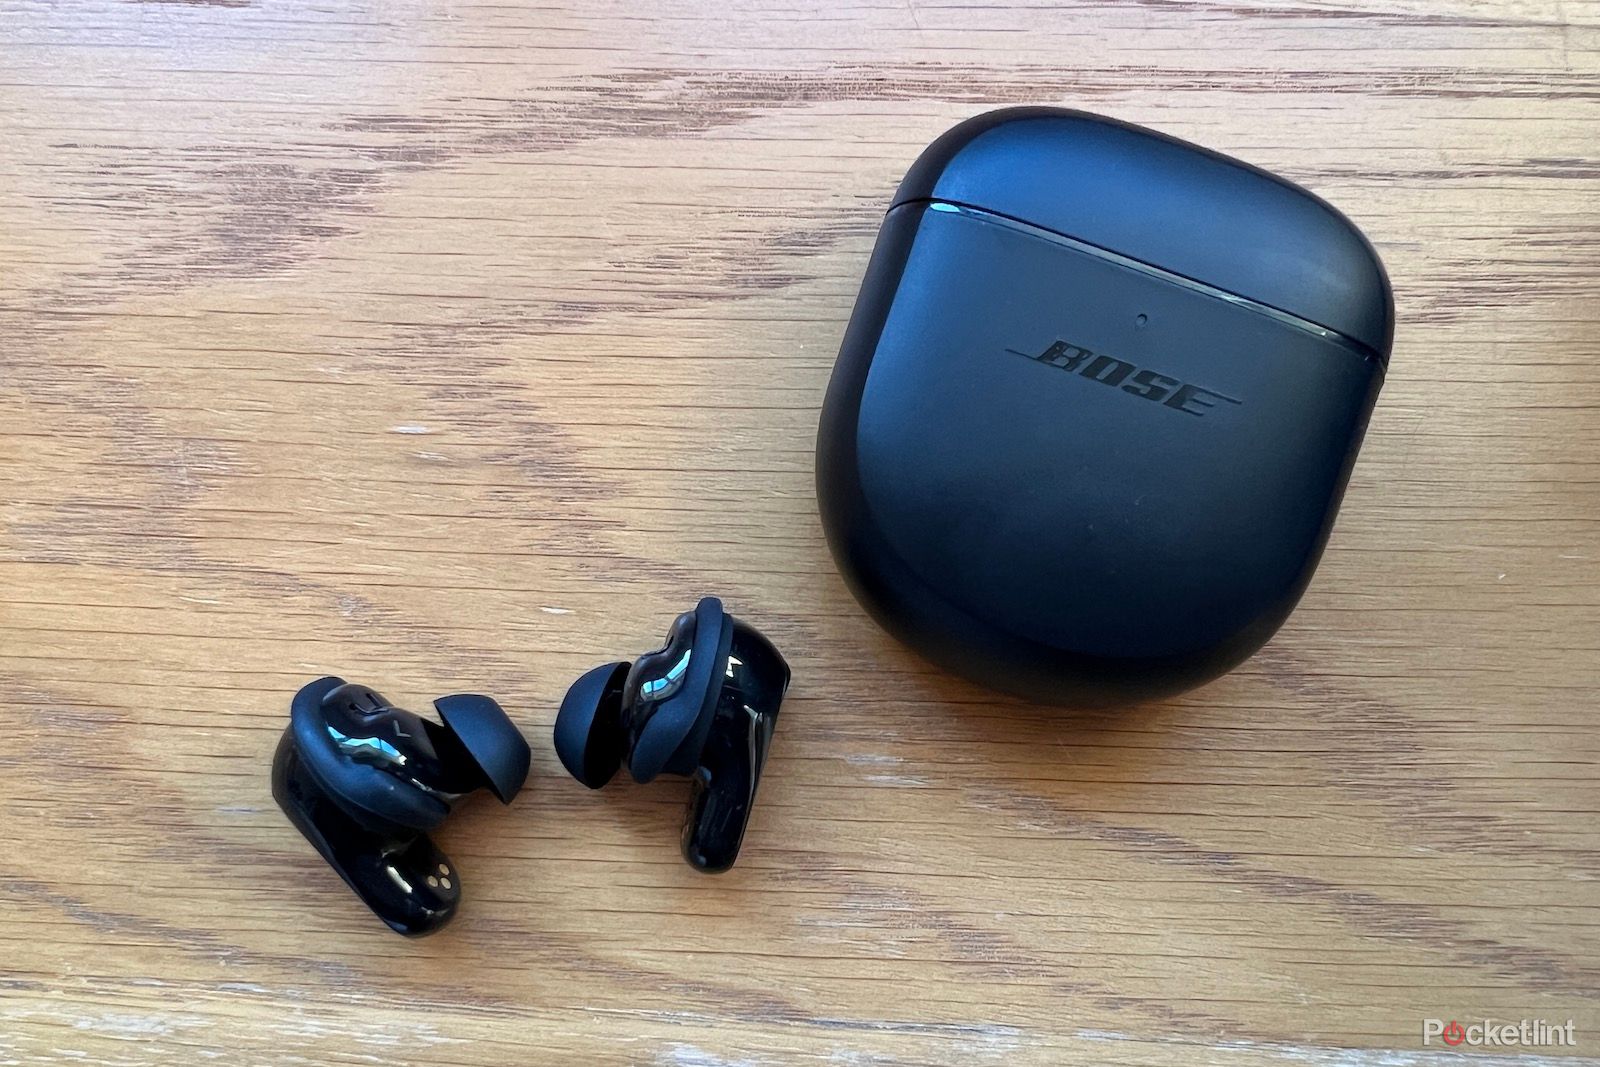 Bose QuietComfort - Auriculares inalámbricos con cancelación de ruido,  auriculares Bluetooth sobre la oreja con hasta 24 horas de duración de la